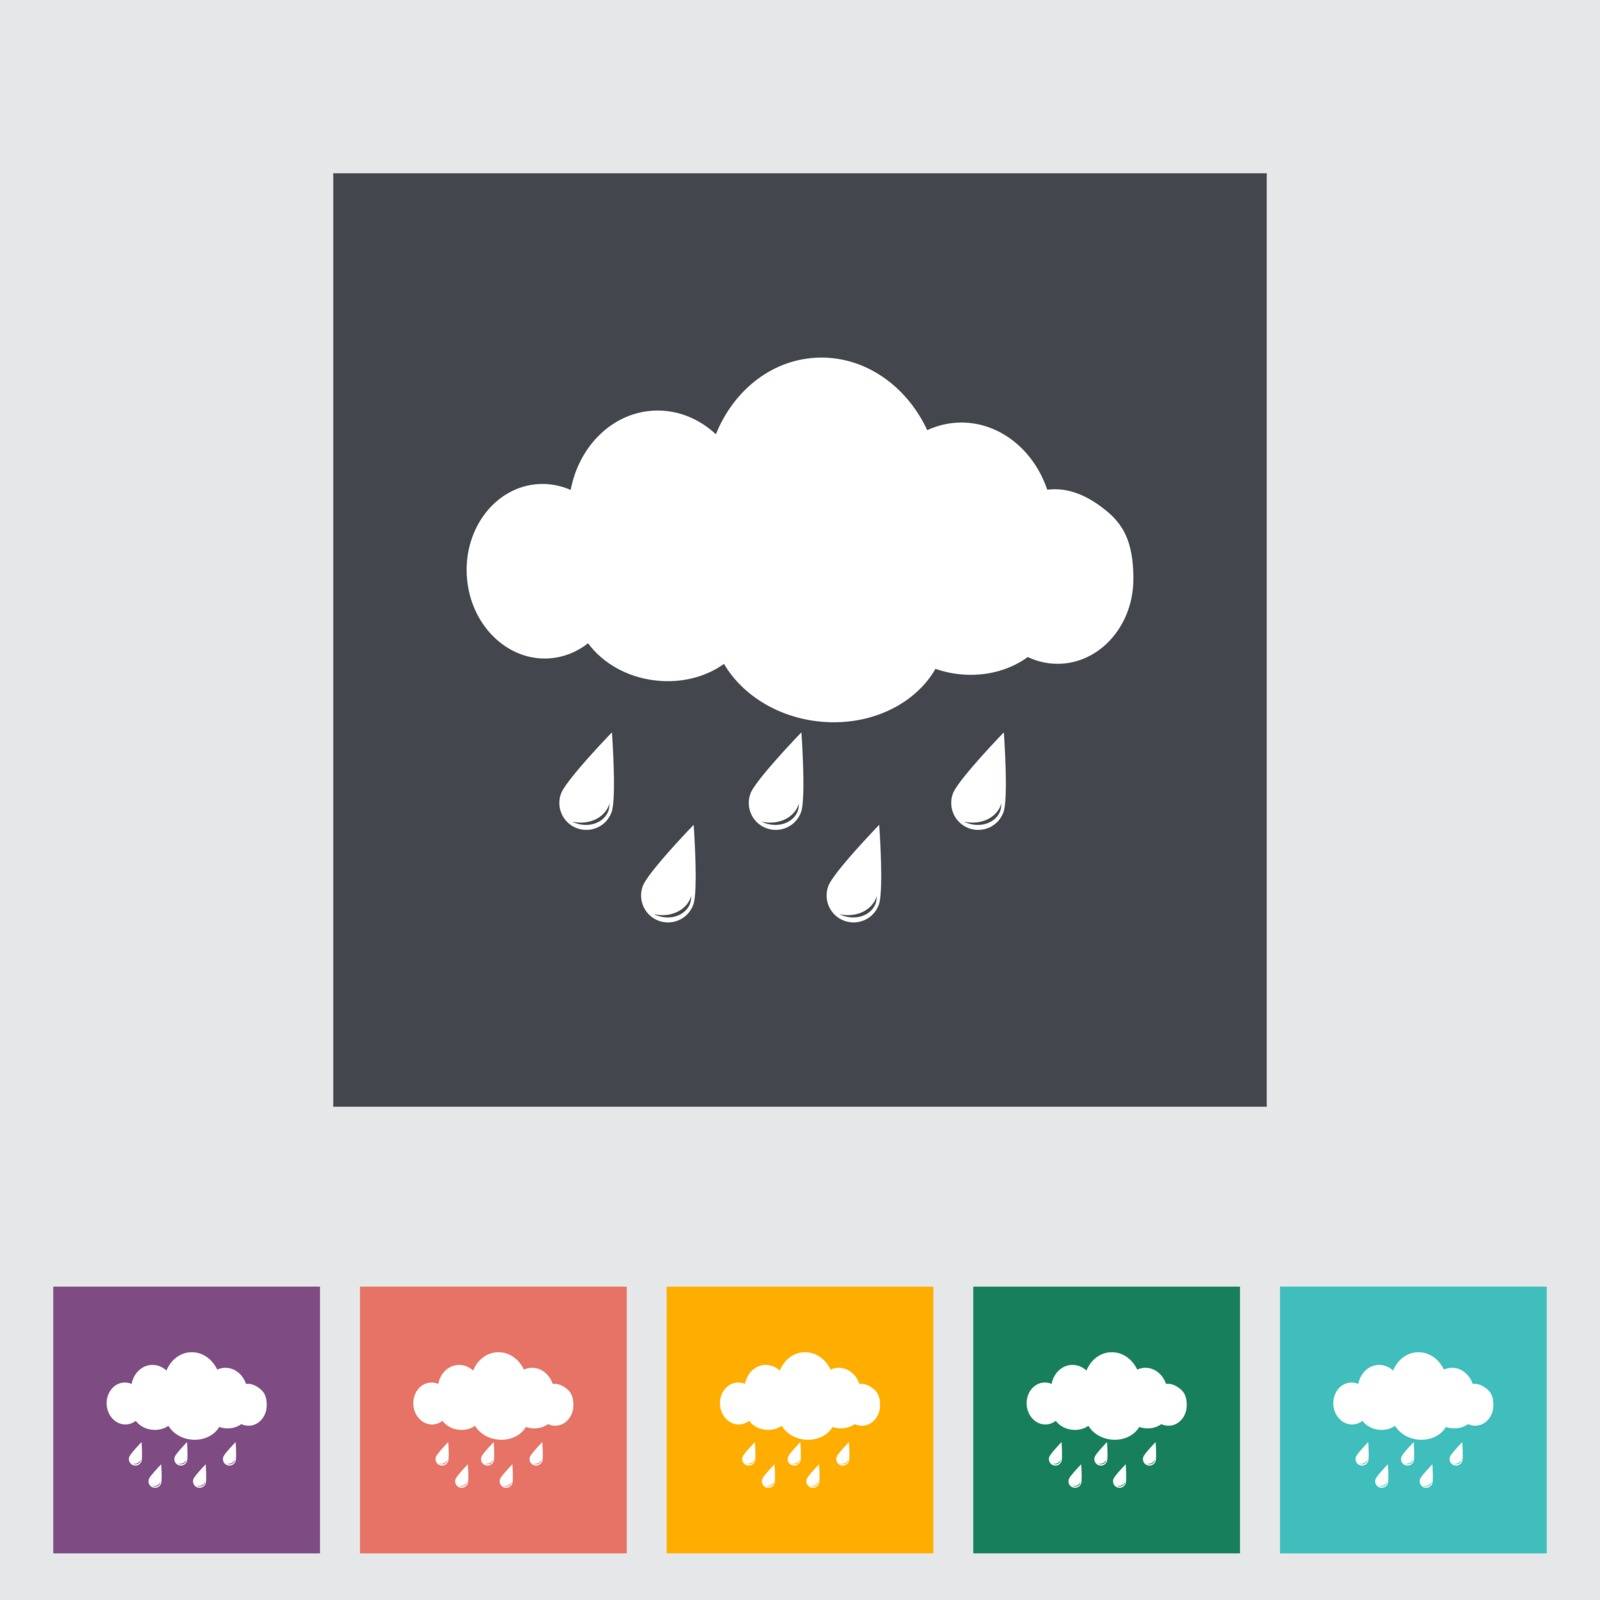 Rain. Single flat icon. Vector illustration.